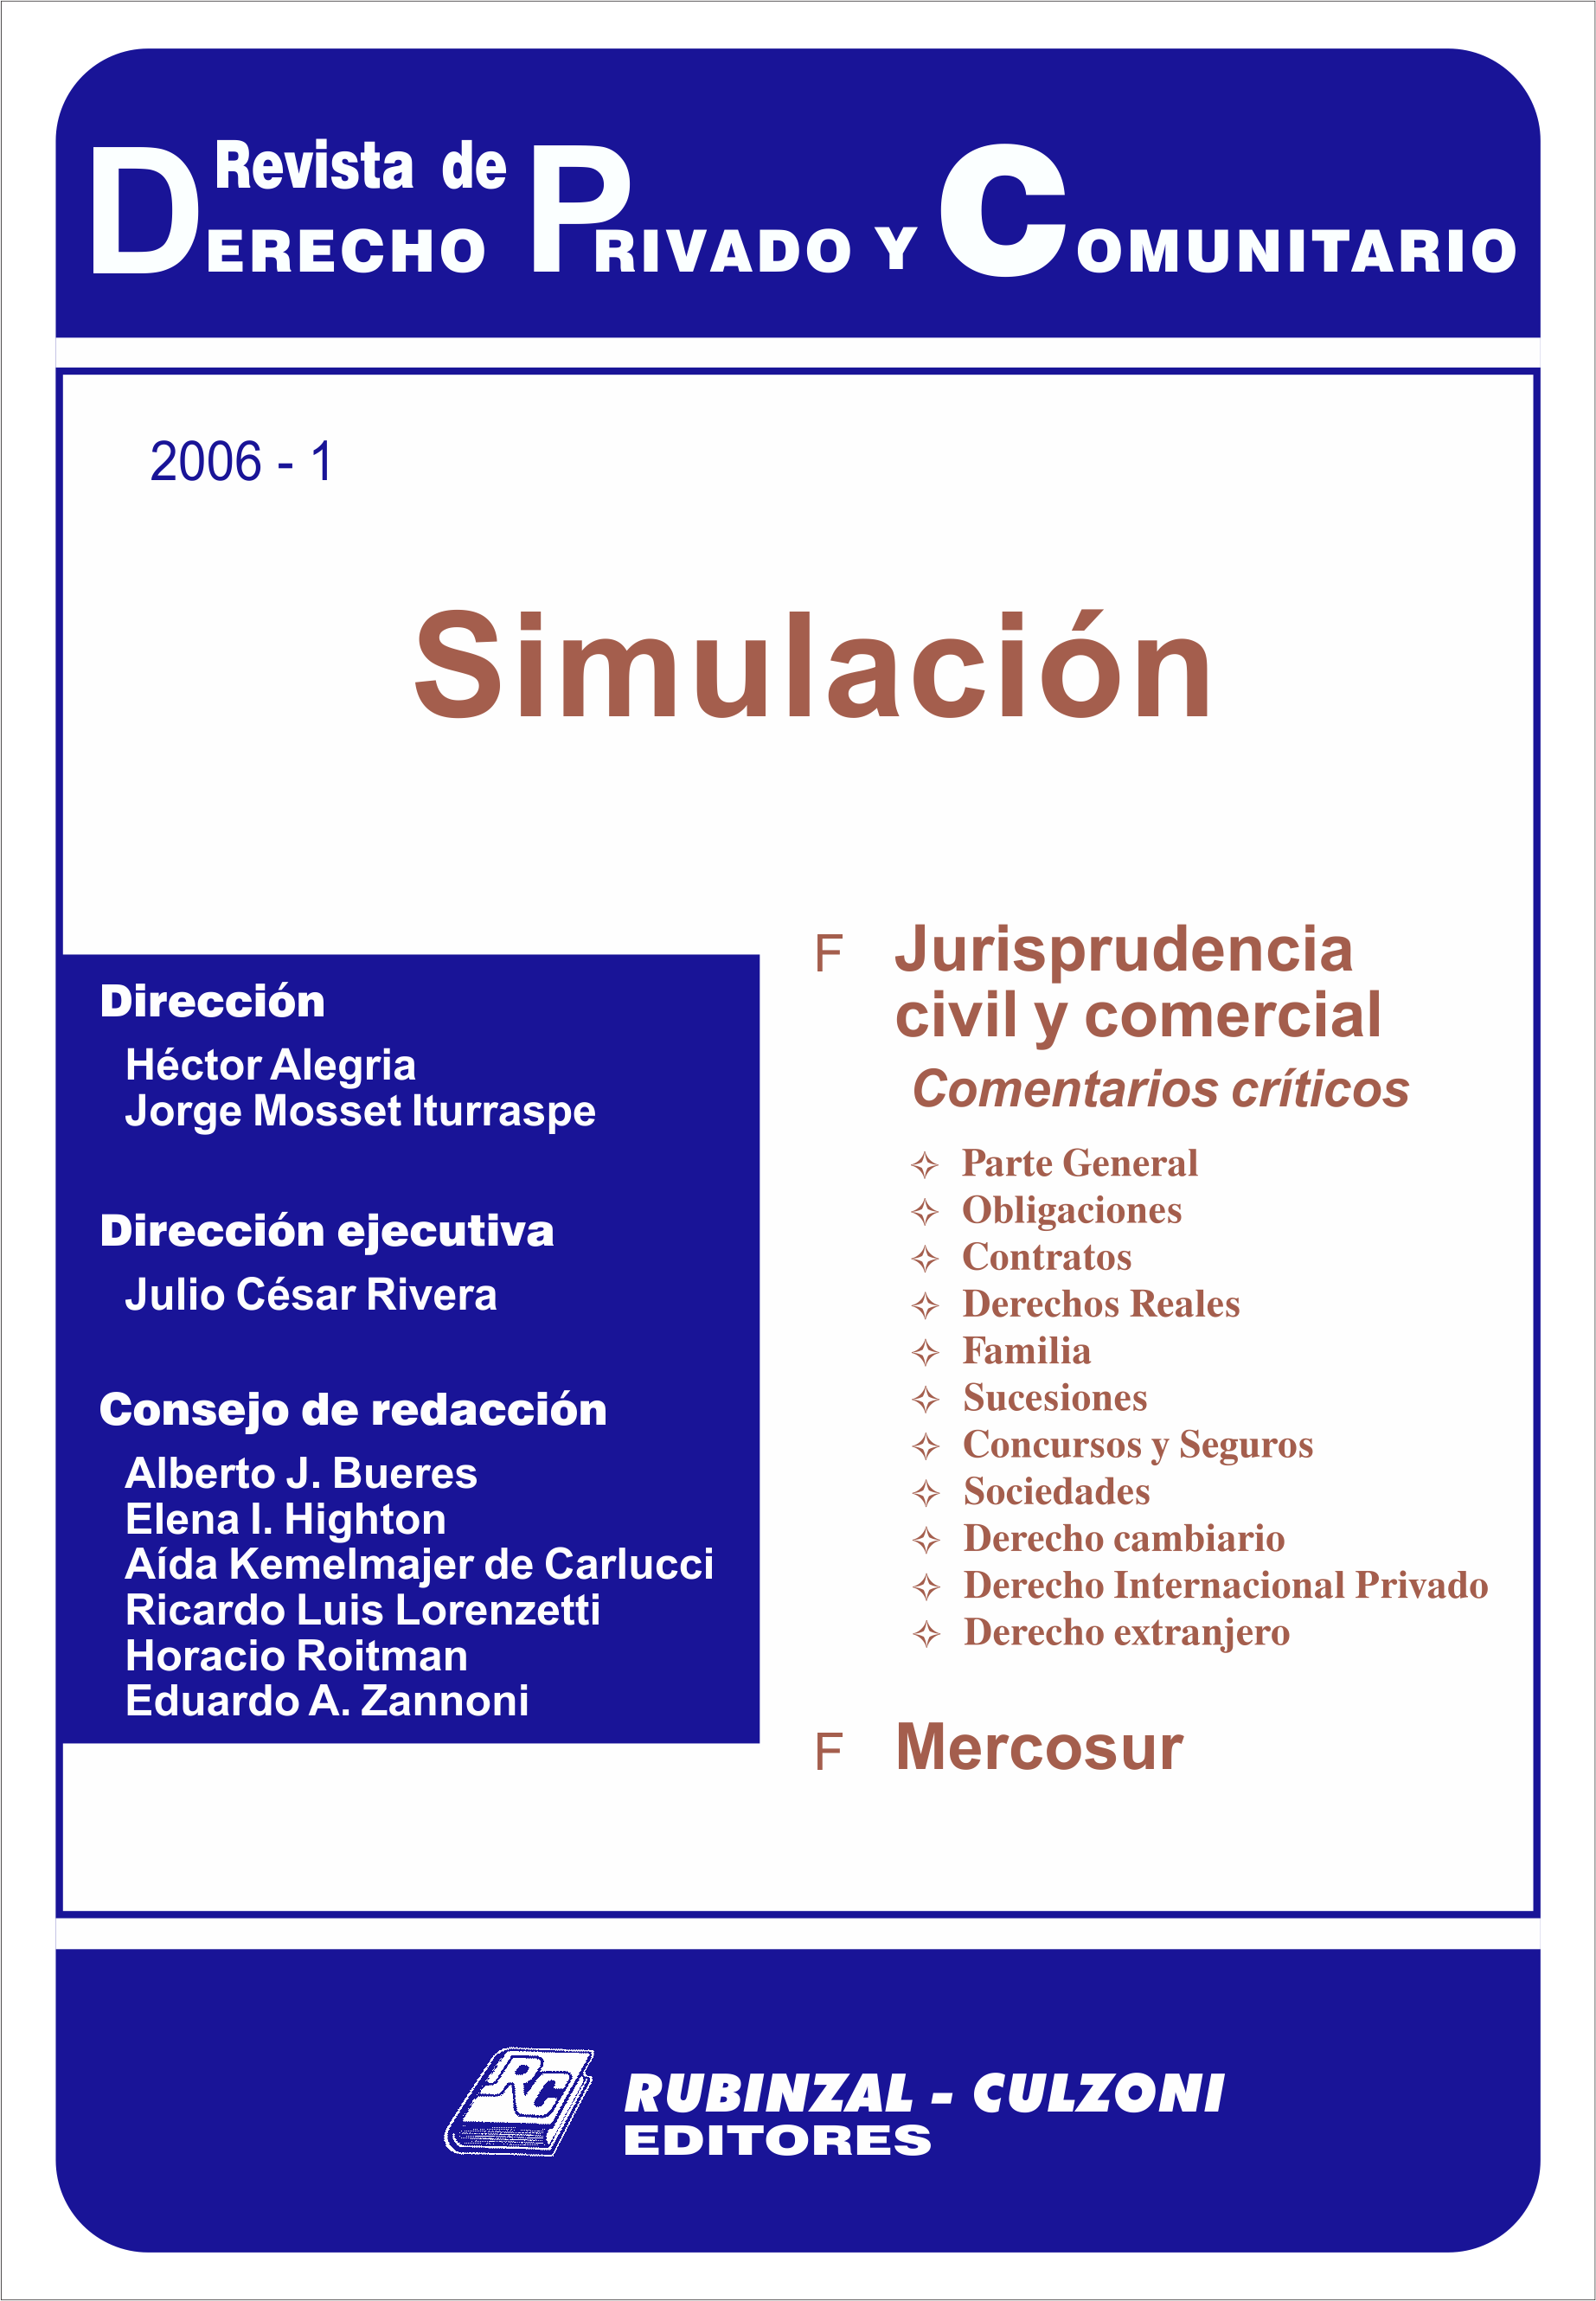 Revista de Derecho Privado y Comunitario - Simulación